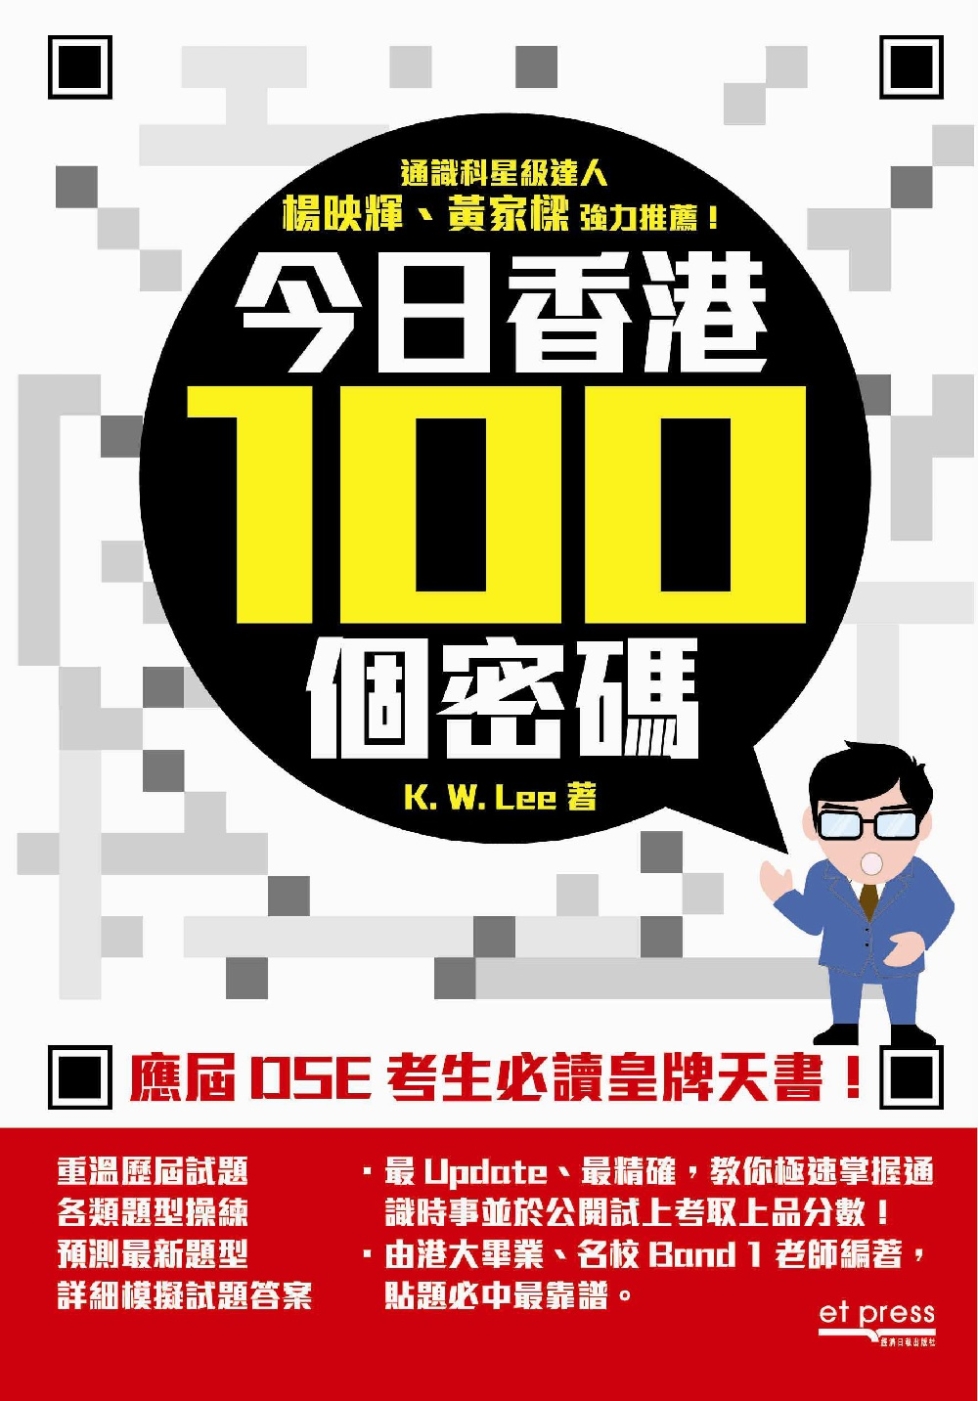 今日香港100個密碼